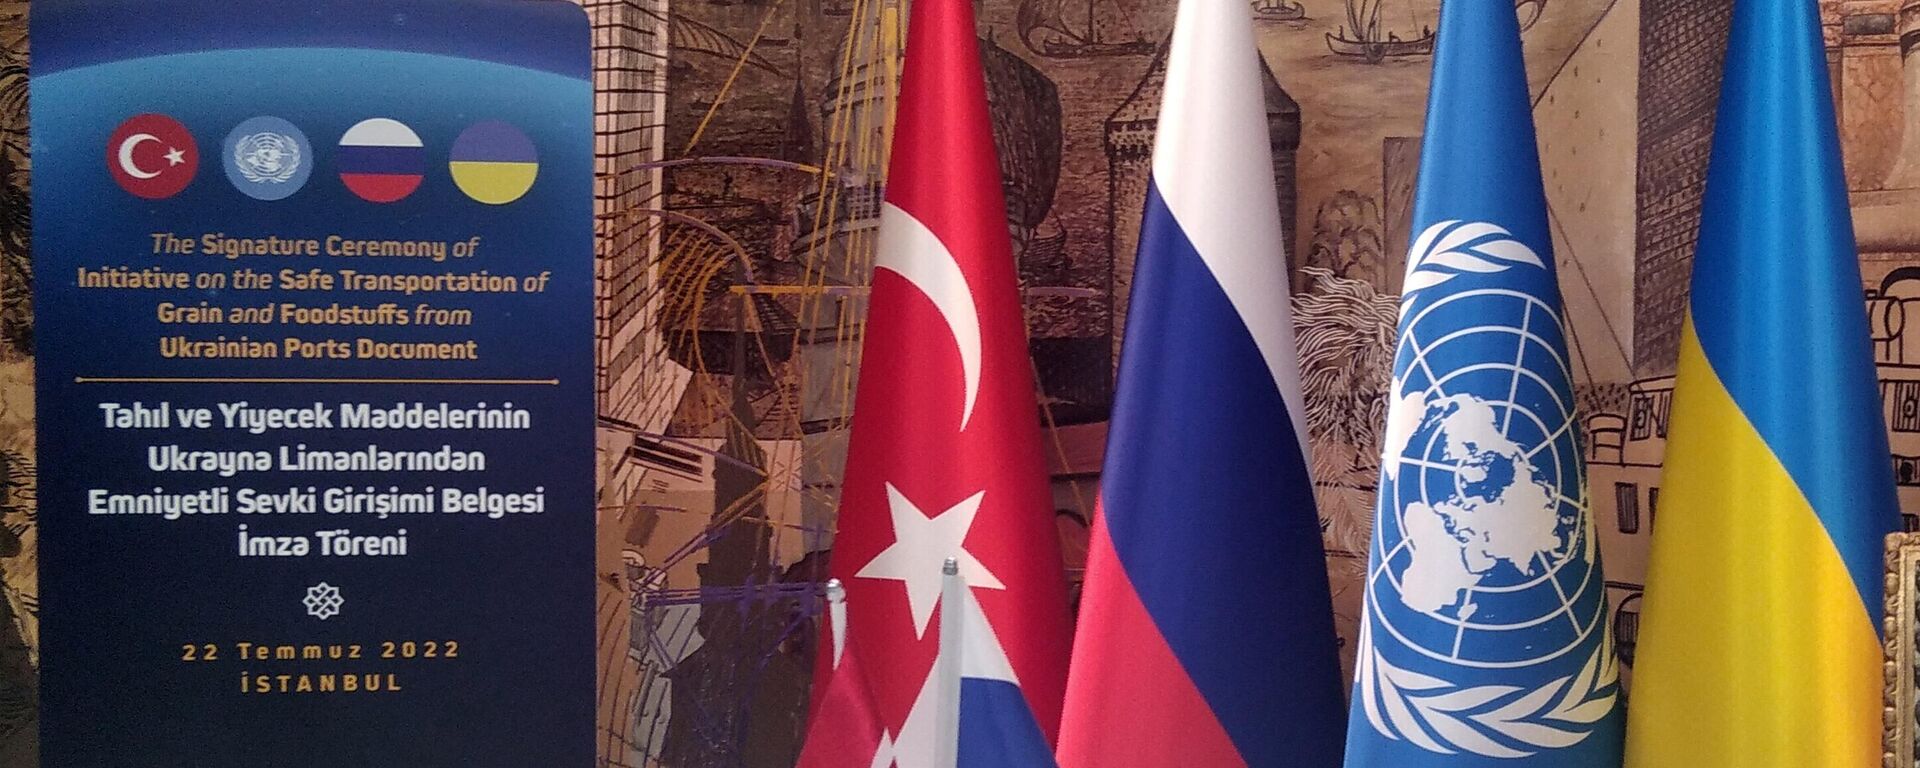 Bandeiras da Turquia, Rússia, ONU e Ucrânia durante assinatura do acordo de grãos em Istambul, 22 de julho de 2022 - Sputnik Brasil, 1920, 22.07.2022